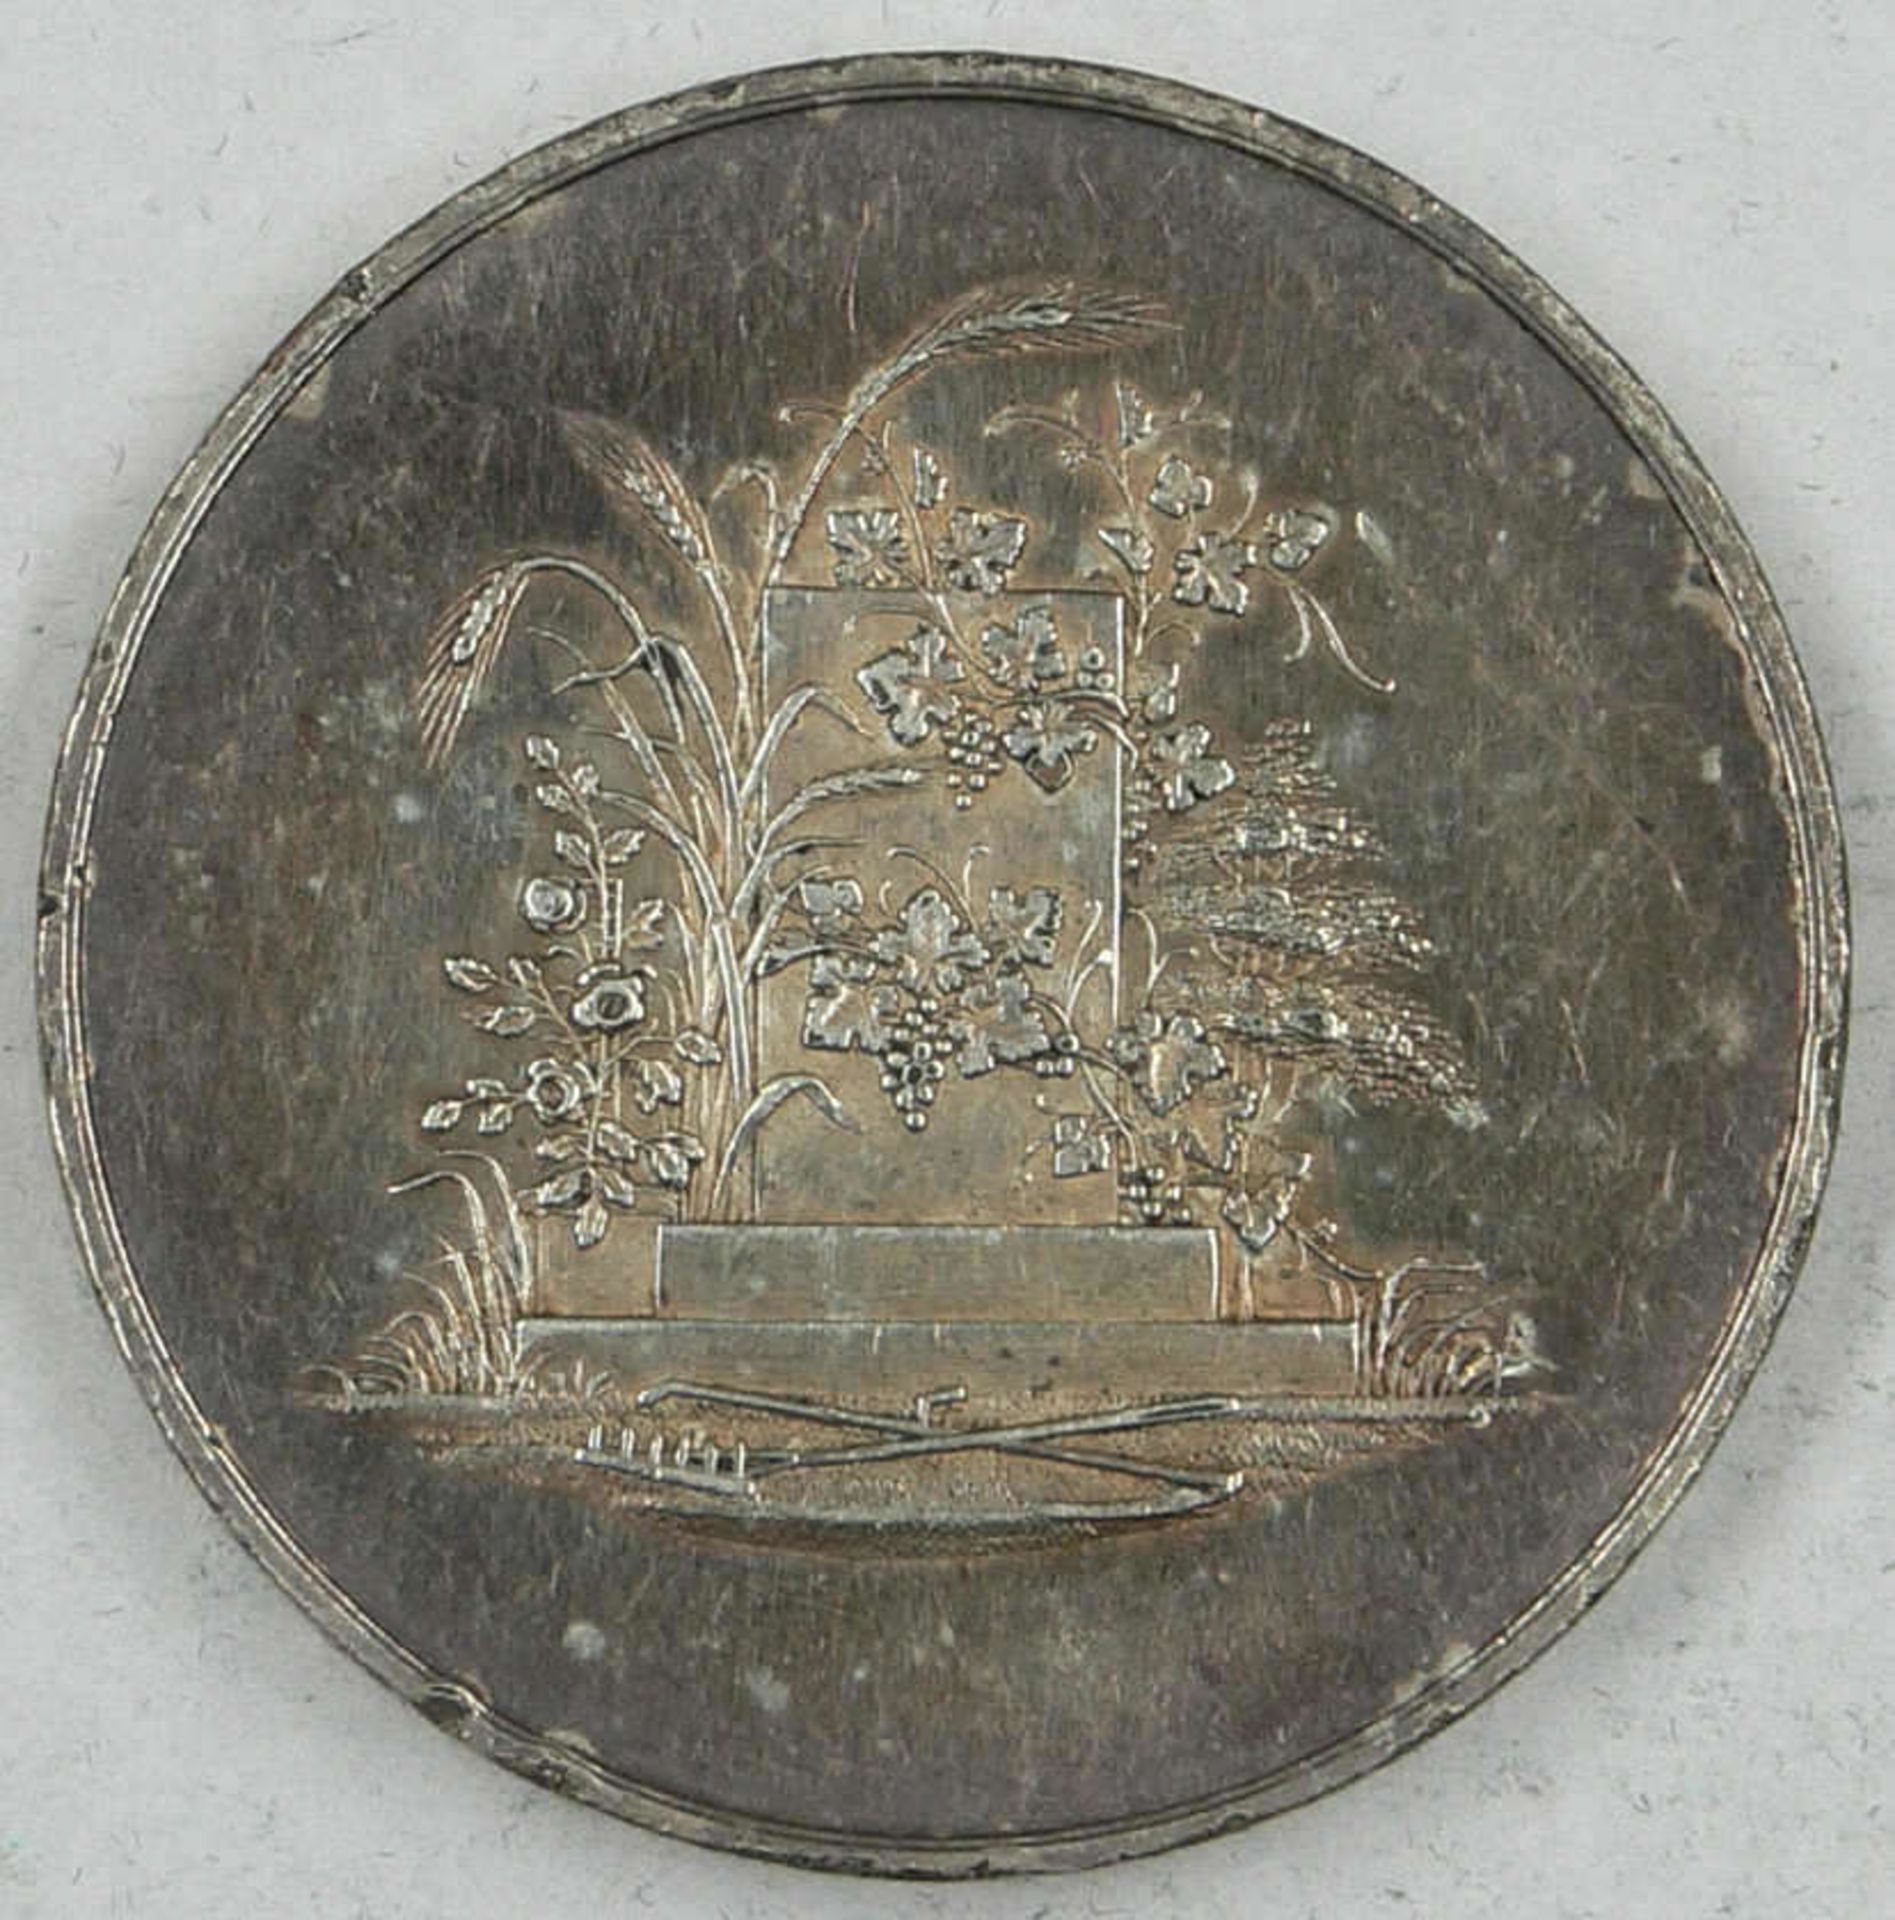 Medaille Cöln 1865, zur allgemeinen landwirtschaftlichen Ausstellung zu Cöln 1865, silberne Medaille - Bild 2 aus 2